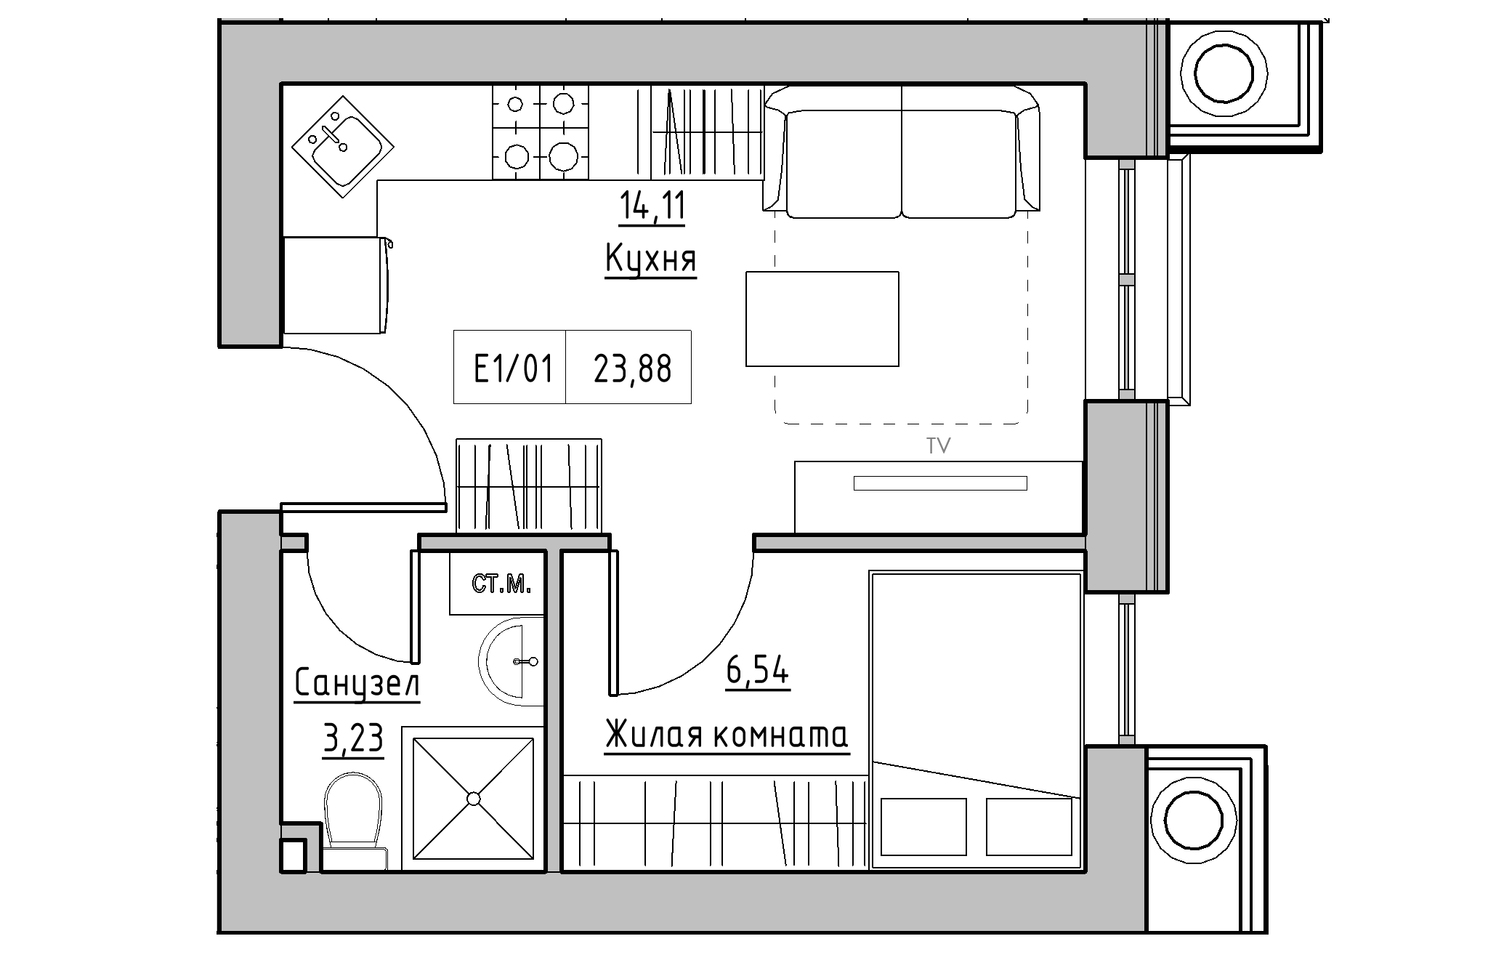 Планировка 1-к квартира площей 23.88м2, KS-010-03/0011.